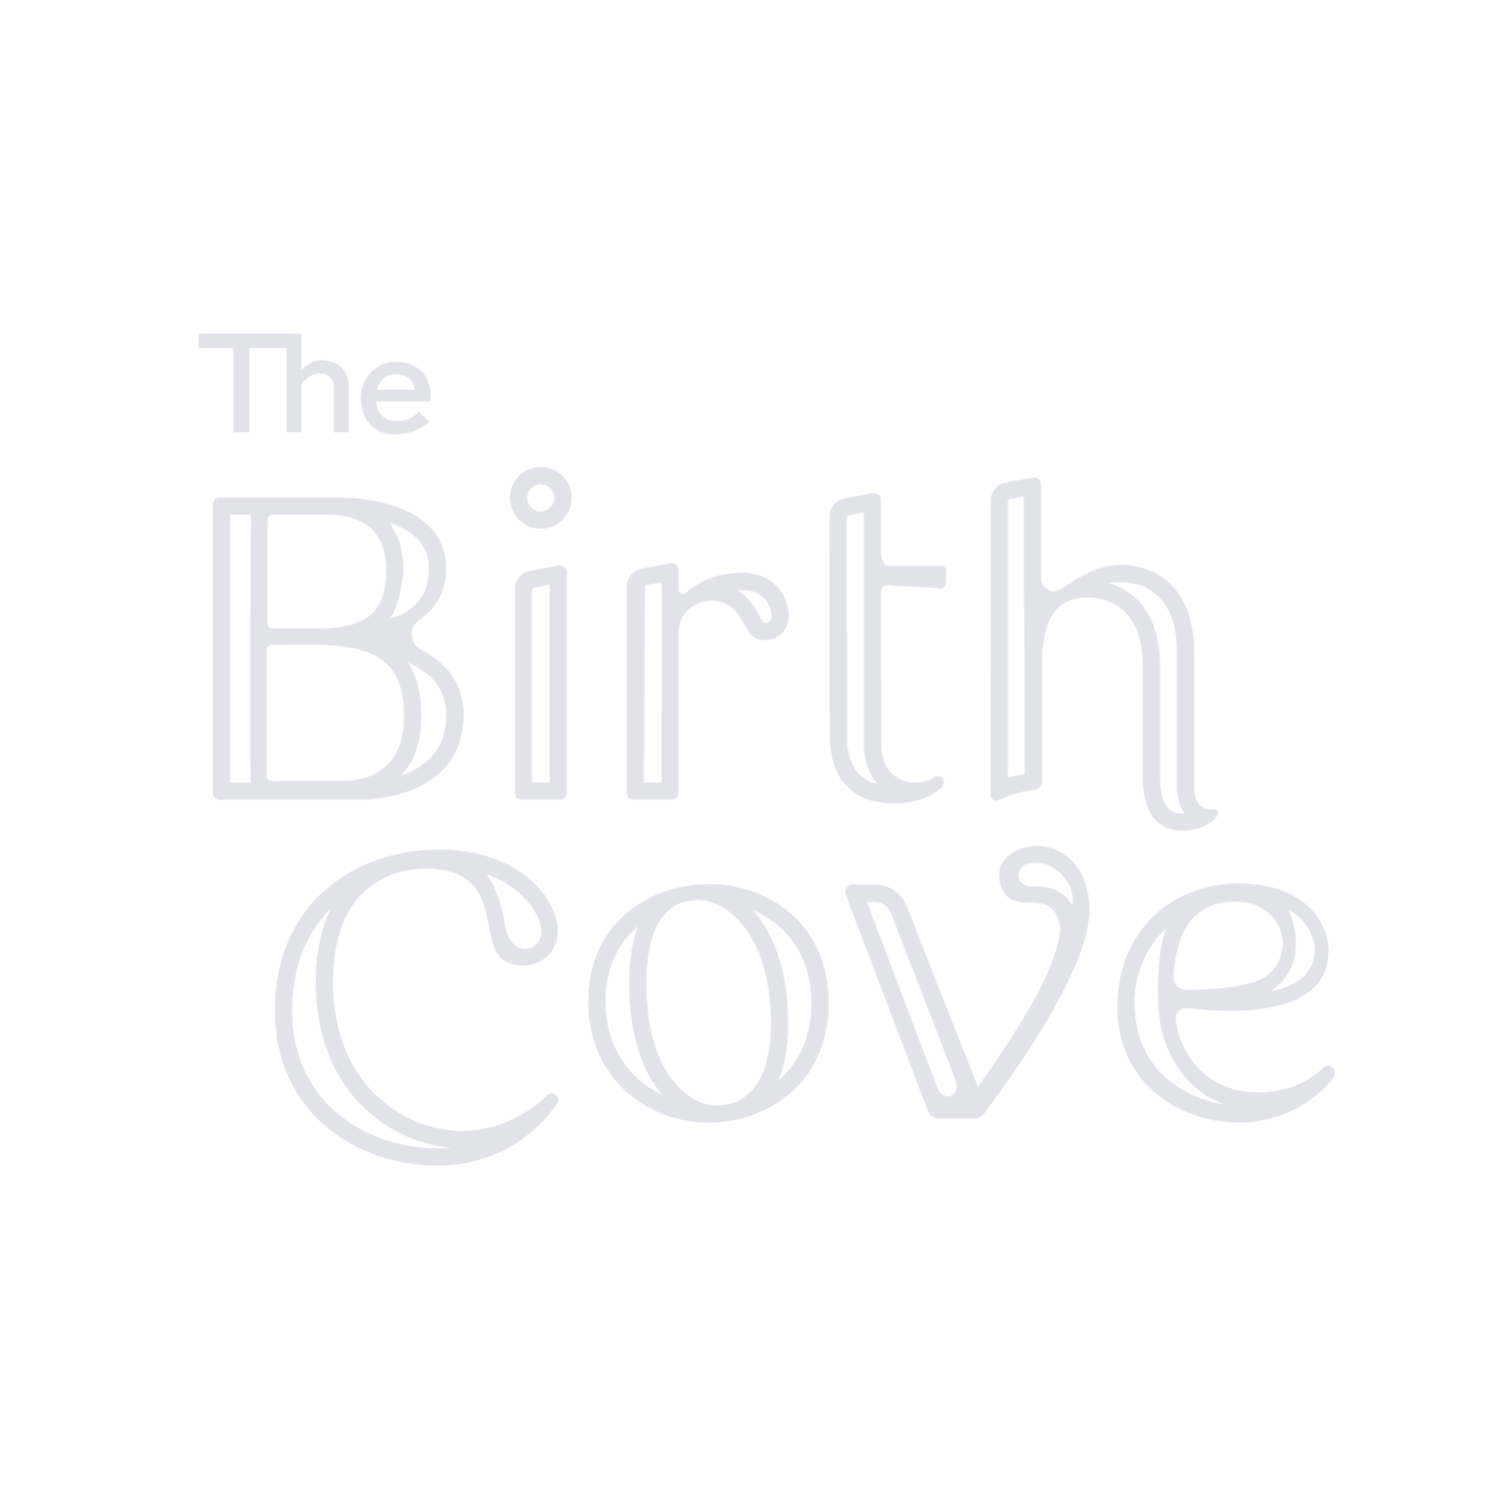 The Birth Cove